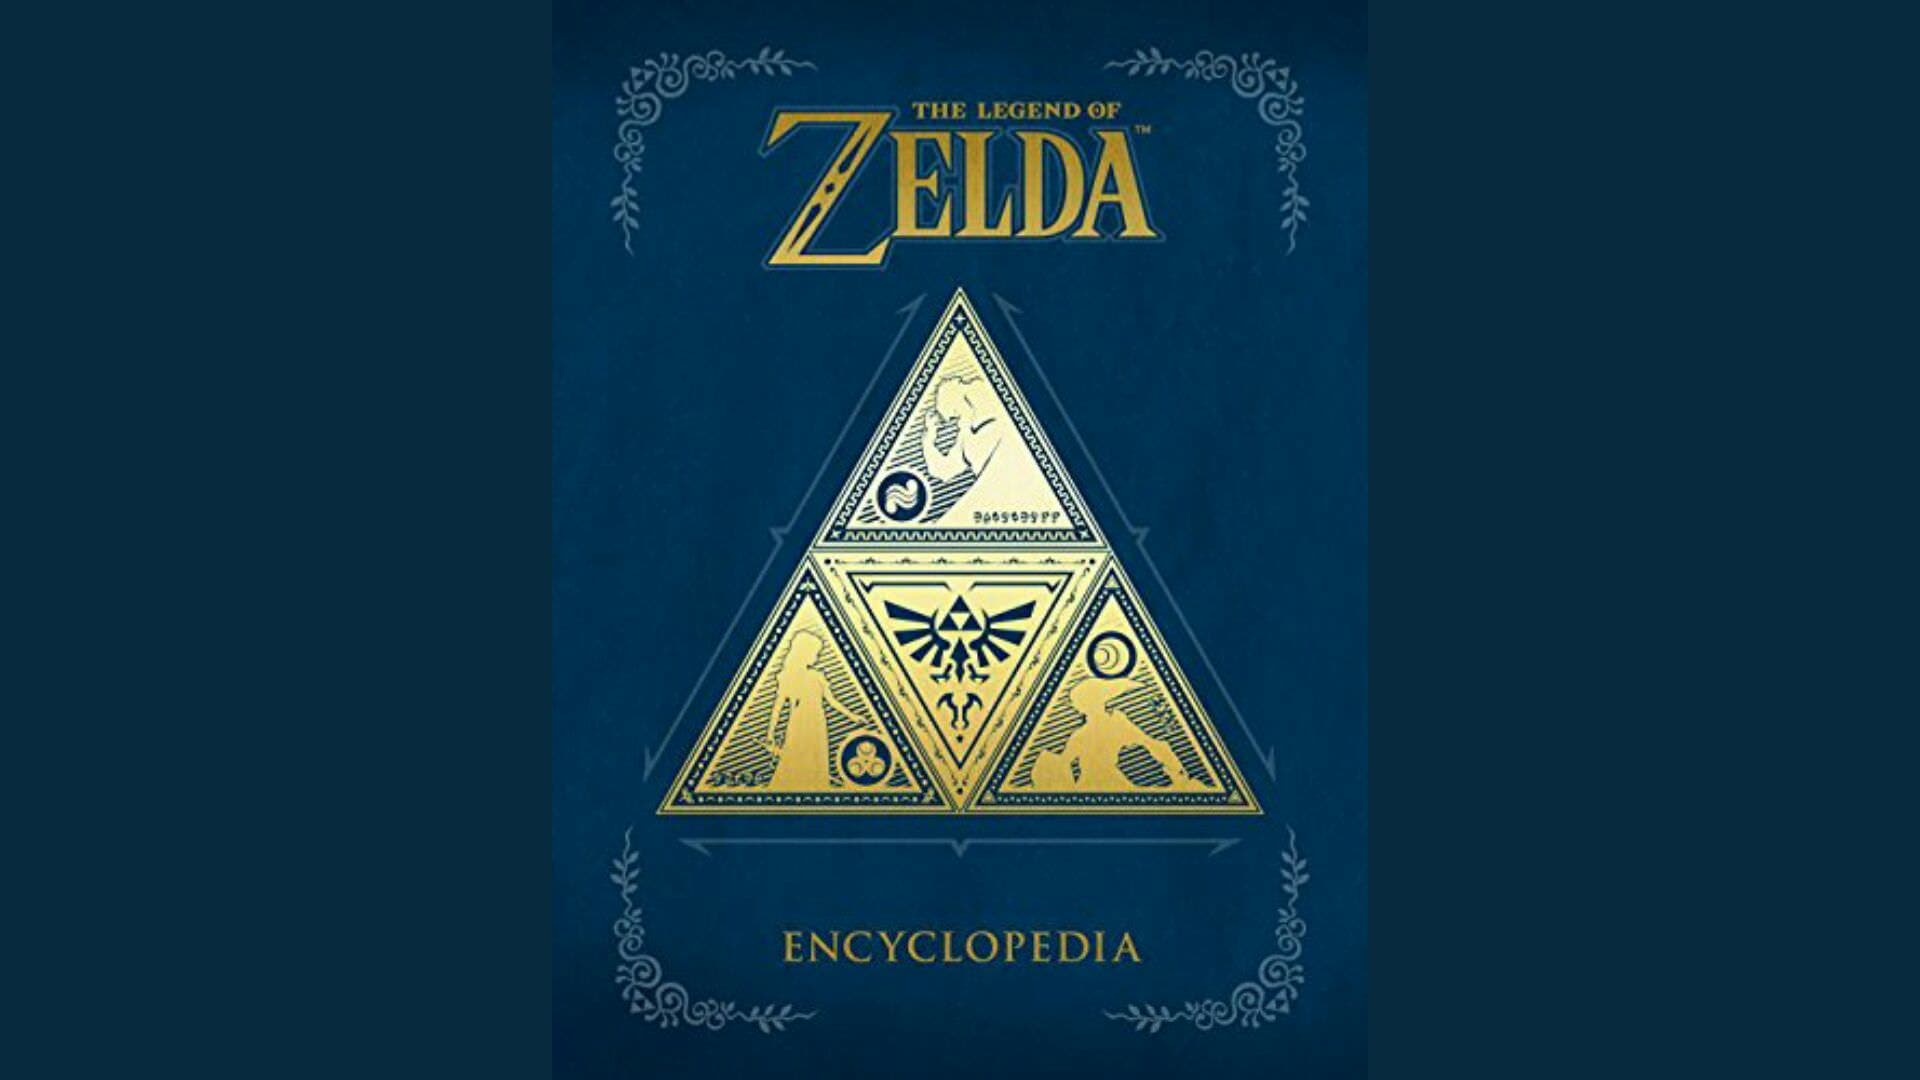 [Act.] La Enciclopedia de The Legend of Zelda parece que retrasará su lanzamiento hasta junio de 2018